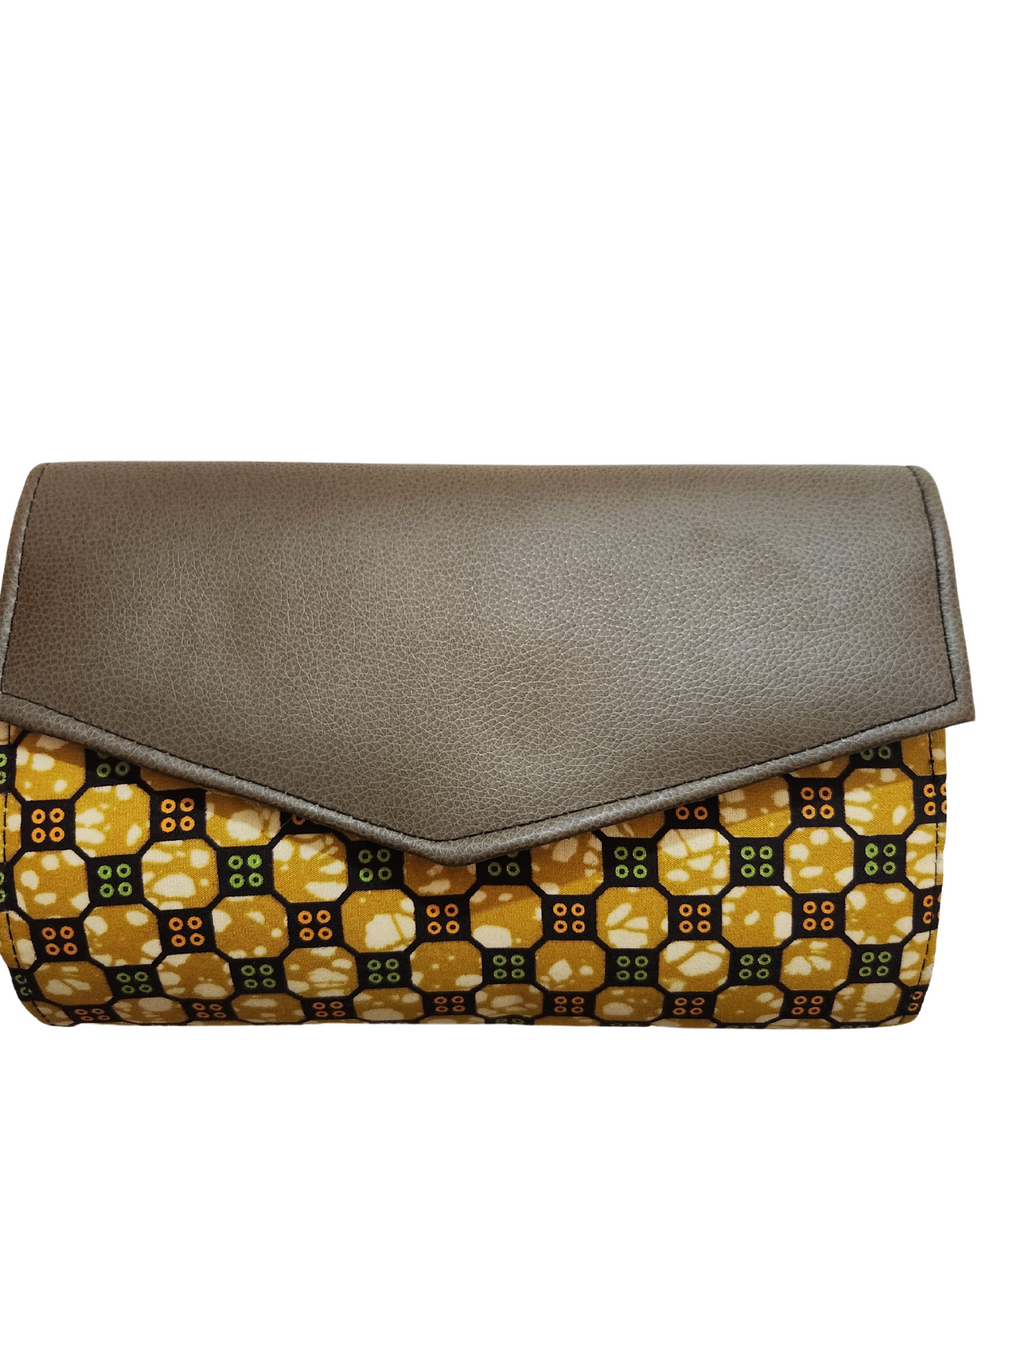 African clutch purse.